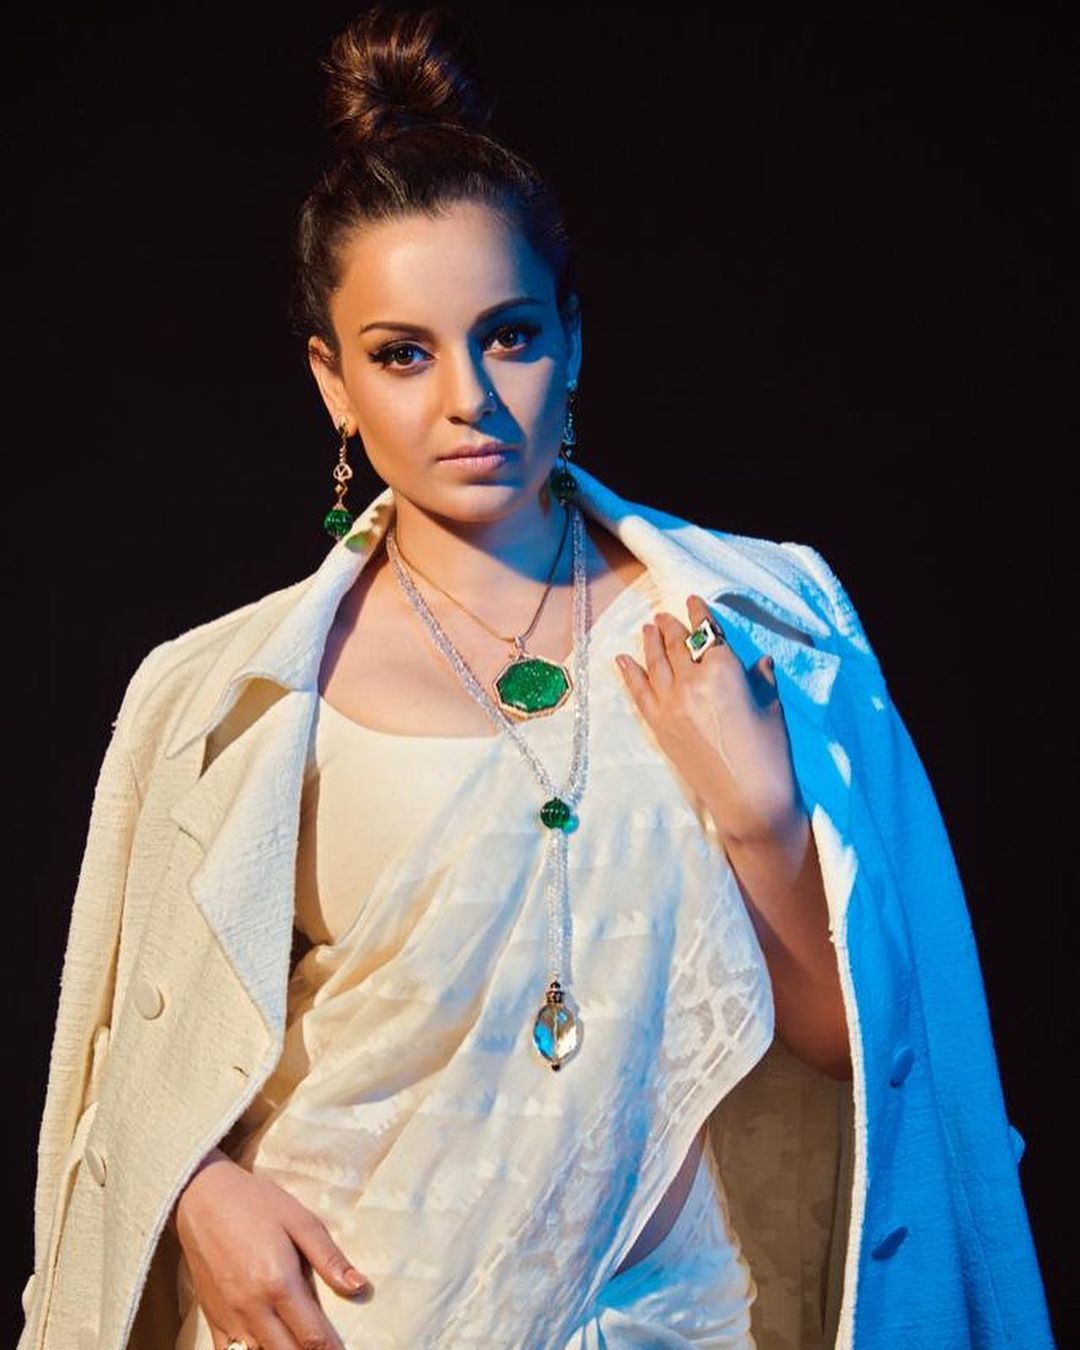 Kangana Ranaut pairs her white khadi saree with a matching jacket